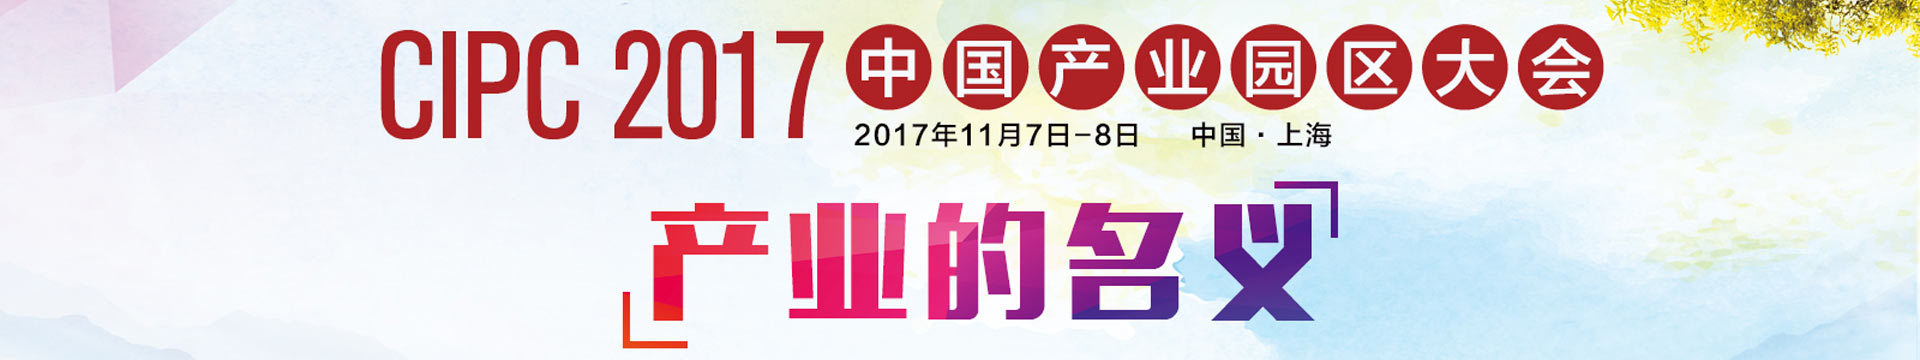 2017中国产业园区大会